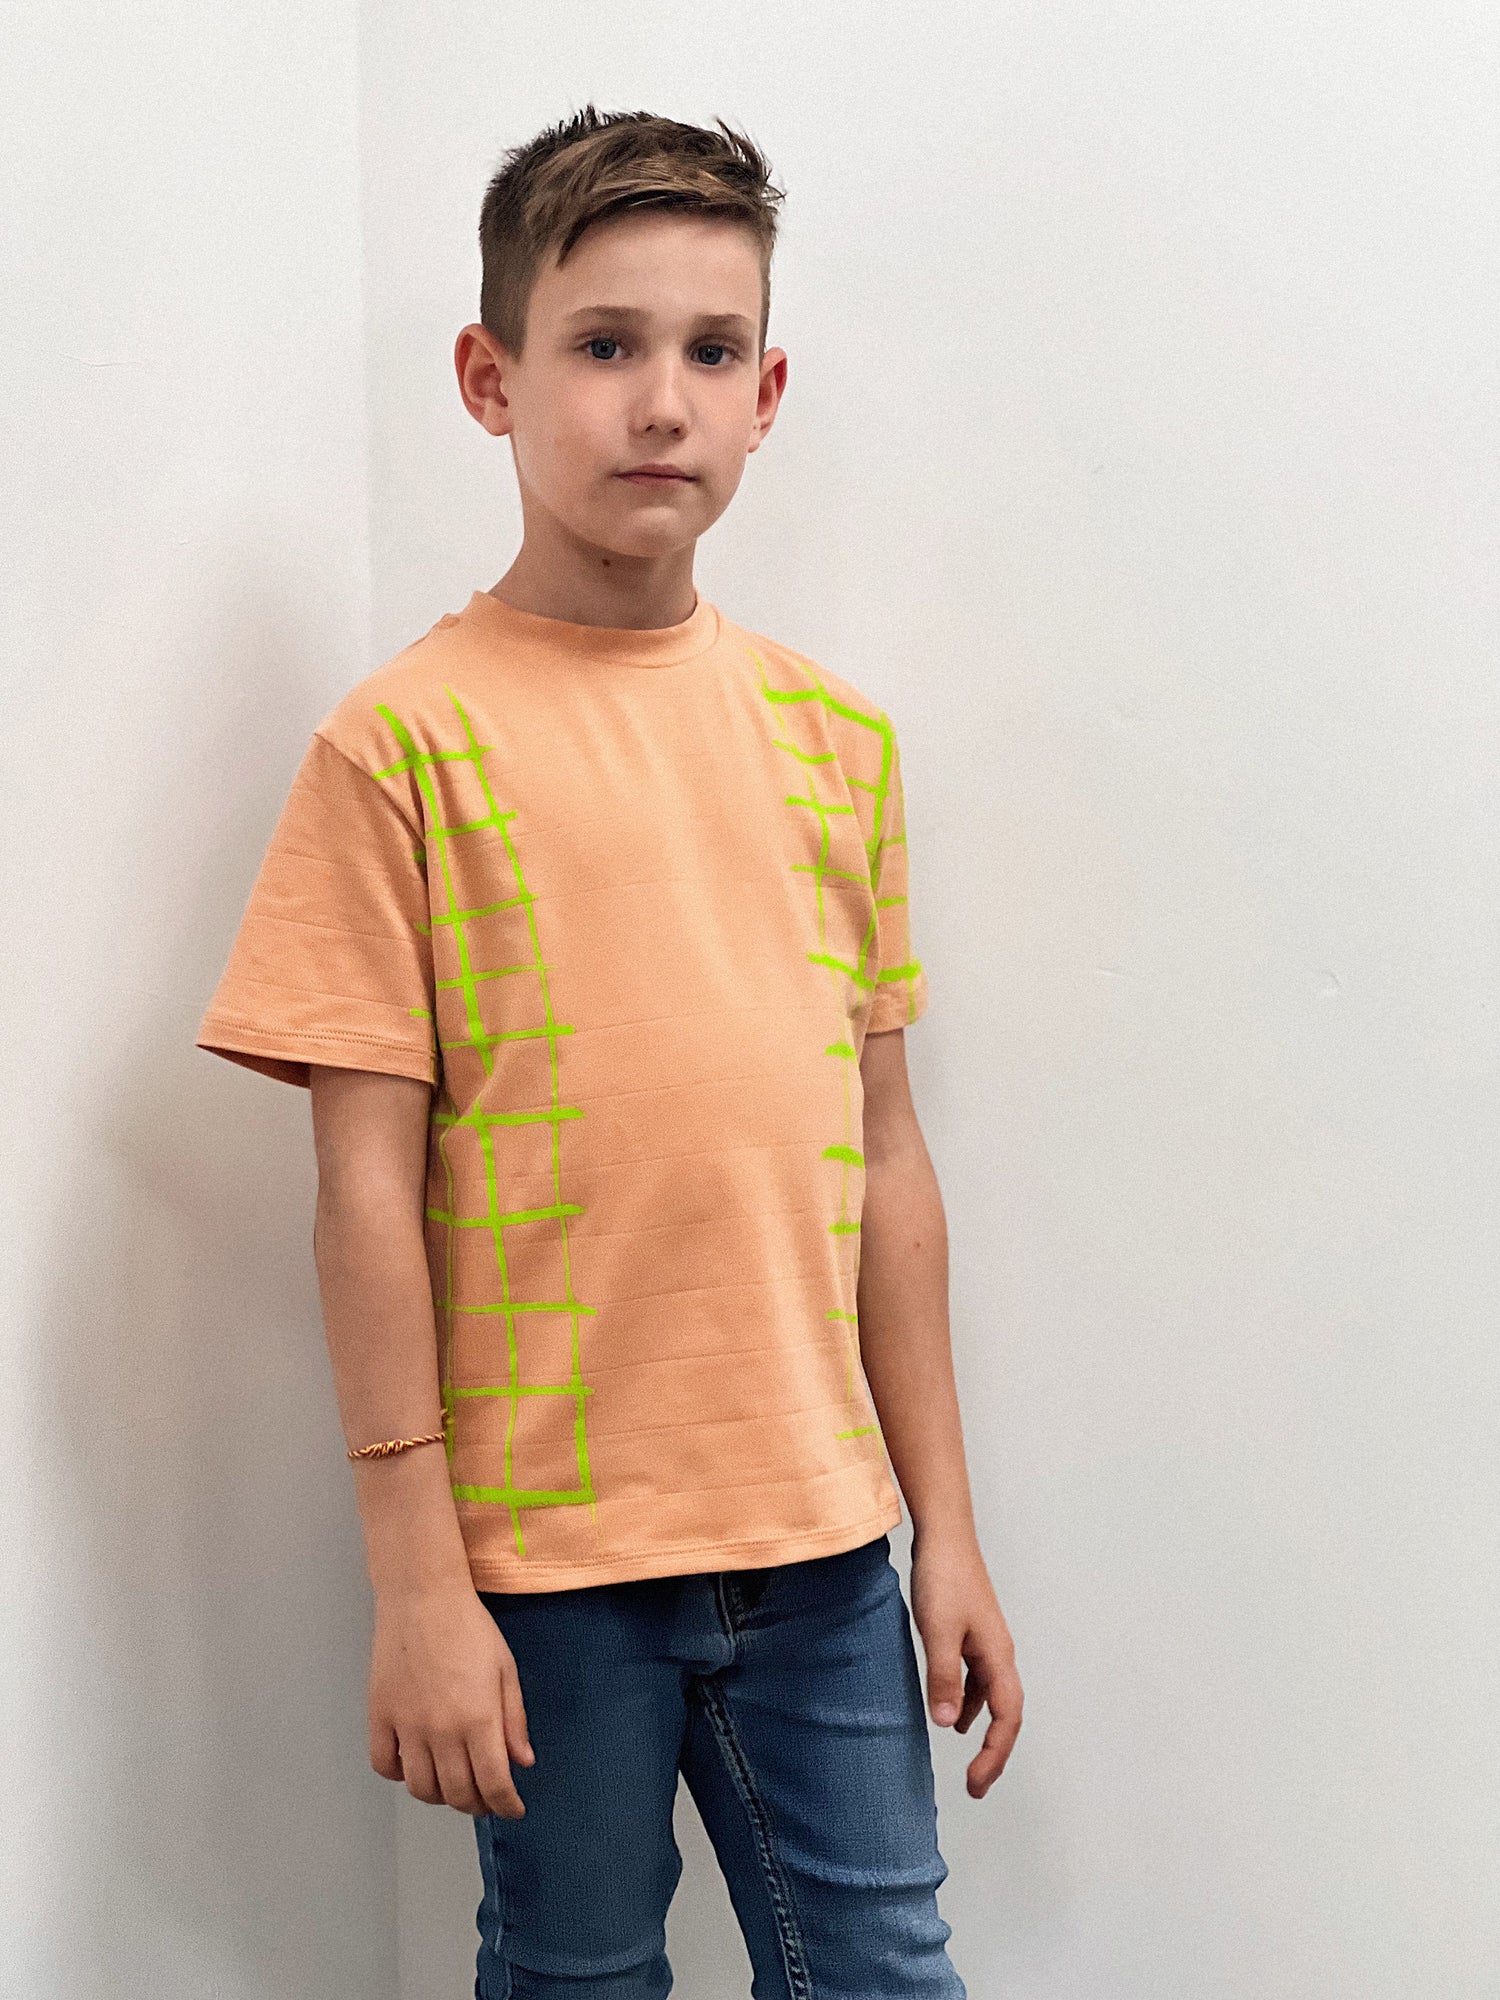 Grid orange short-sleeved children's t-shirt